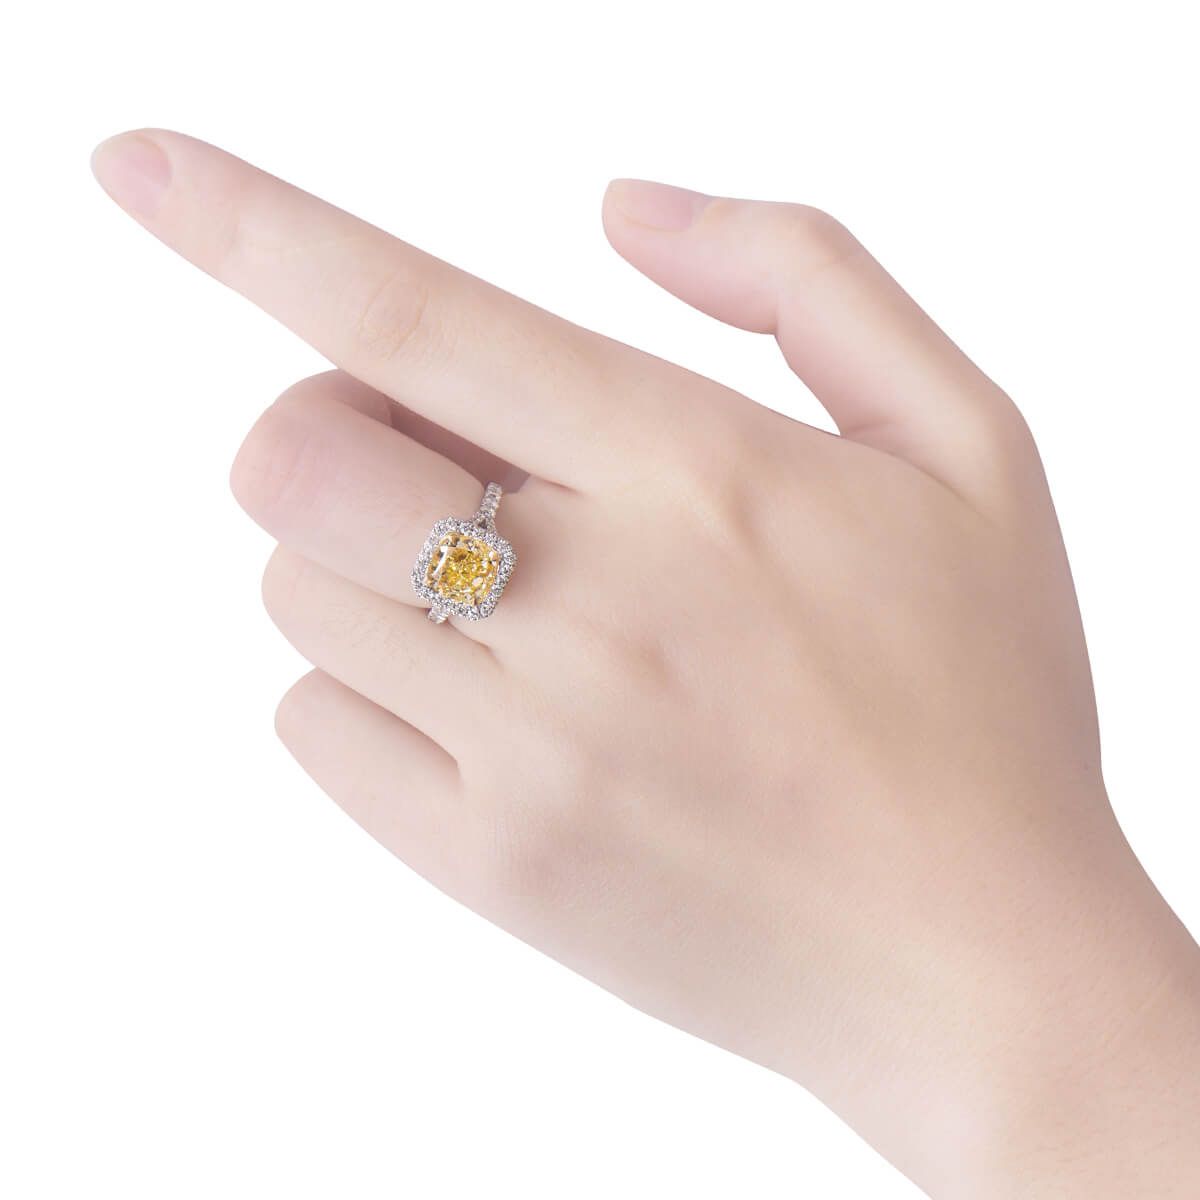 Fancy Yellow Diamond Ring, 3.28 Ct. (4.05 Ct. TW), Cushion shape, GIA Certified, 5182900543